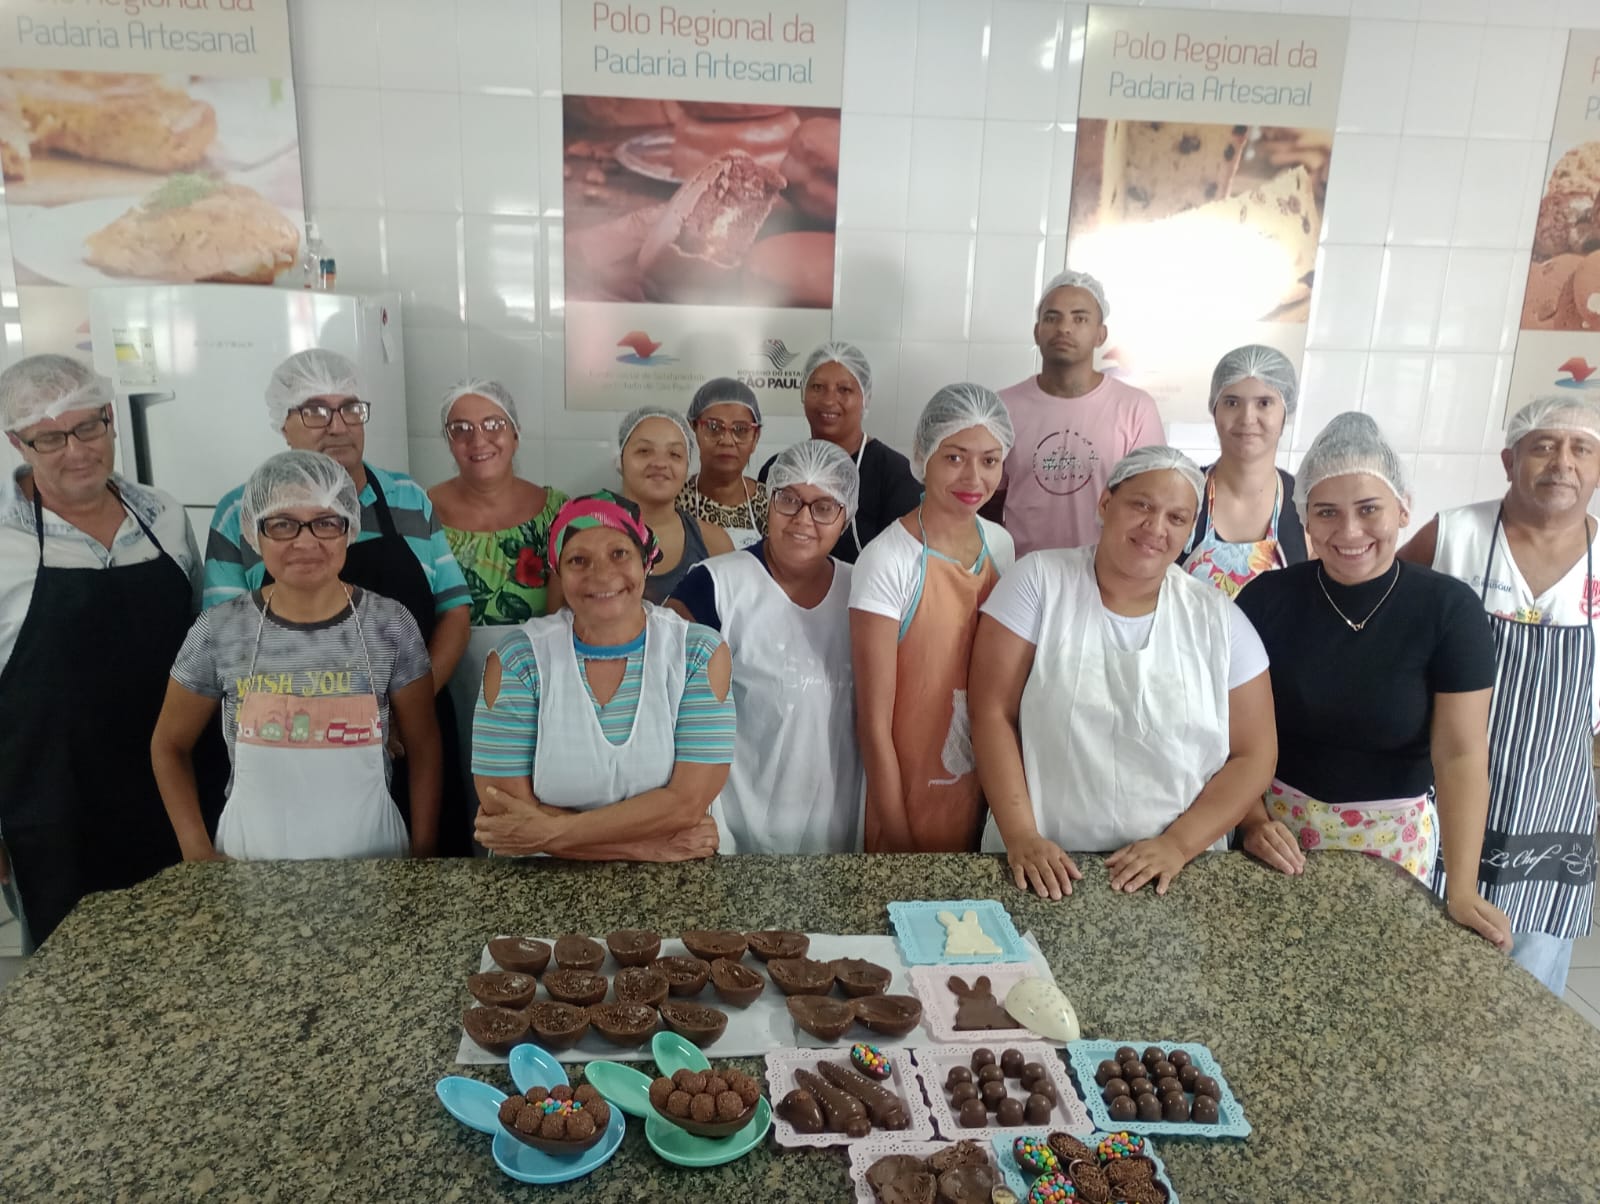 Alunos de Padaria Artesanal de Lorena se Preparam para a Páscoa com Delícias de Chocolate